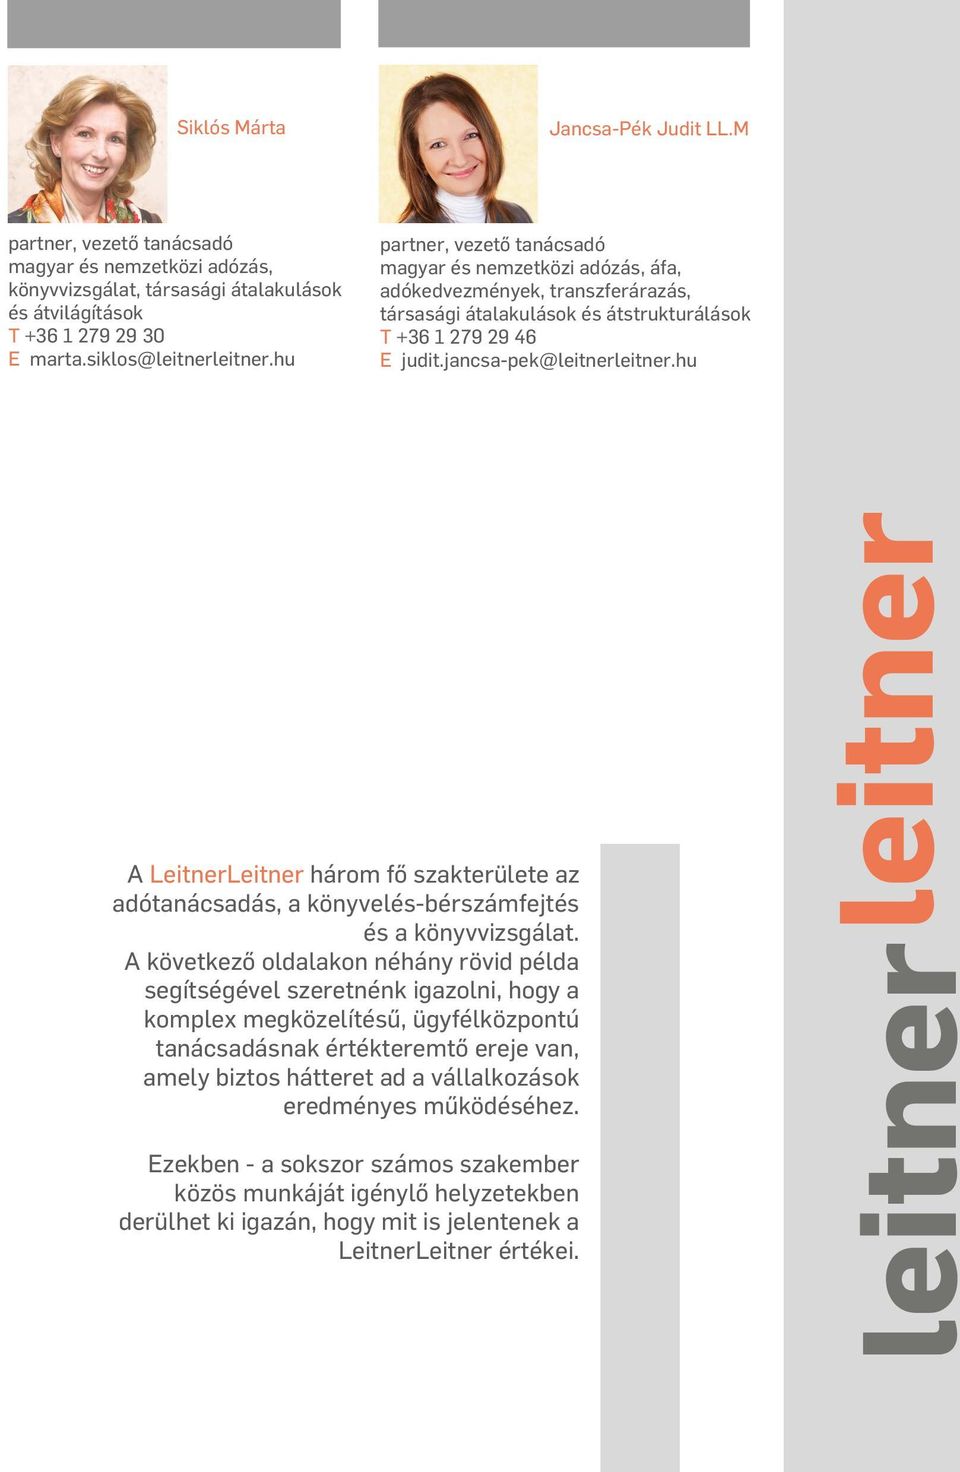 hu A LeitnerLeitner három fő szakterülete az adótanácsadás, a könyvelés-bérszámfejtés és a könyvvizsgálat.